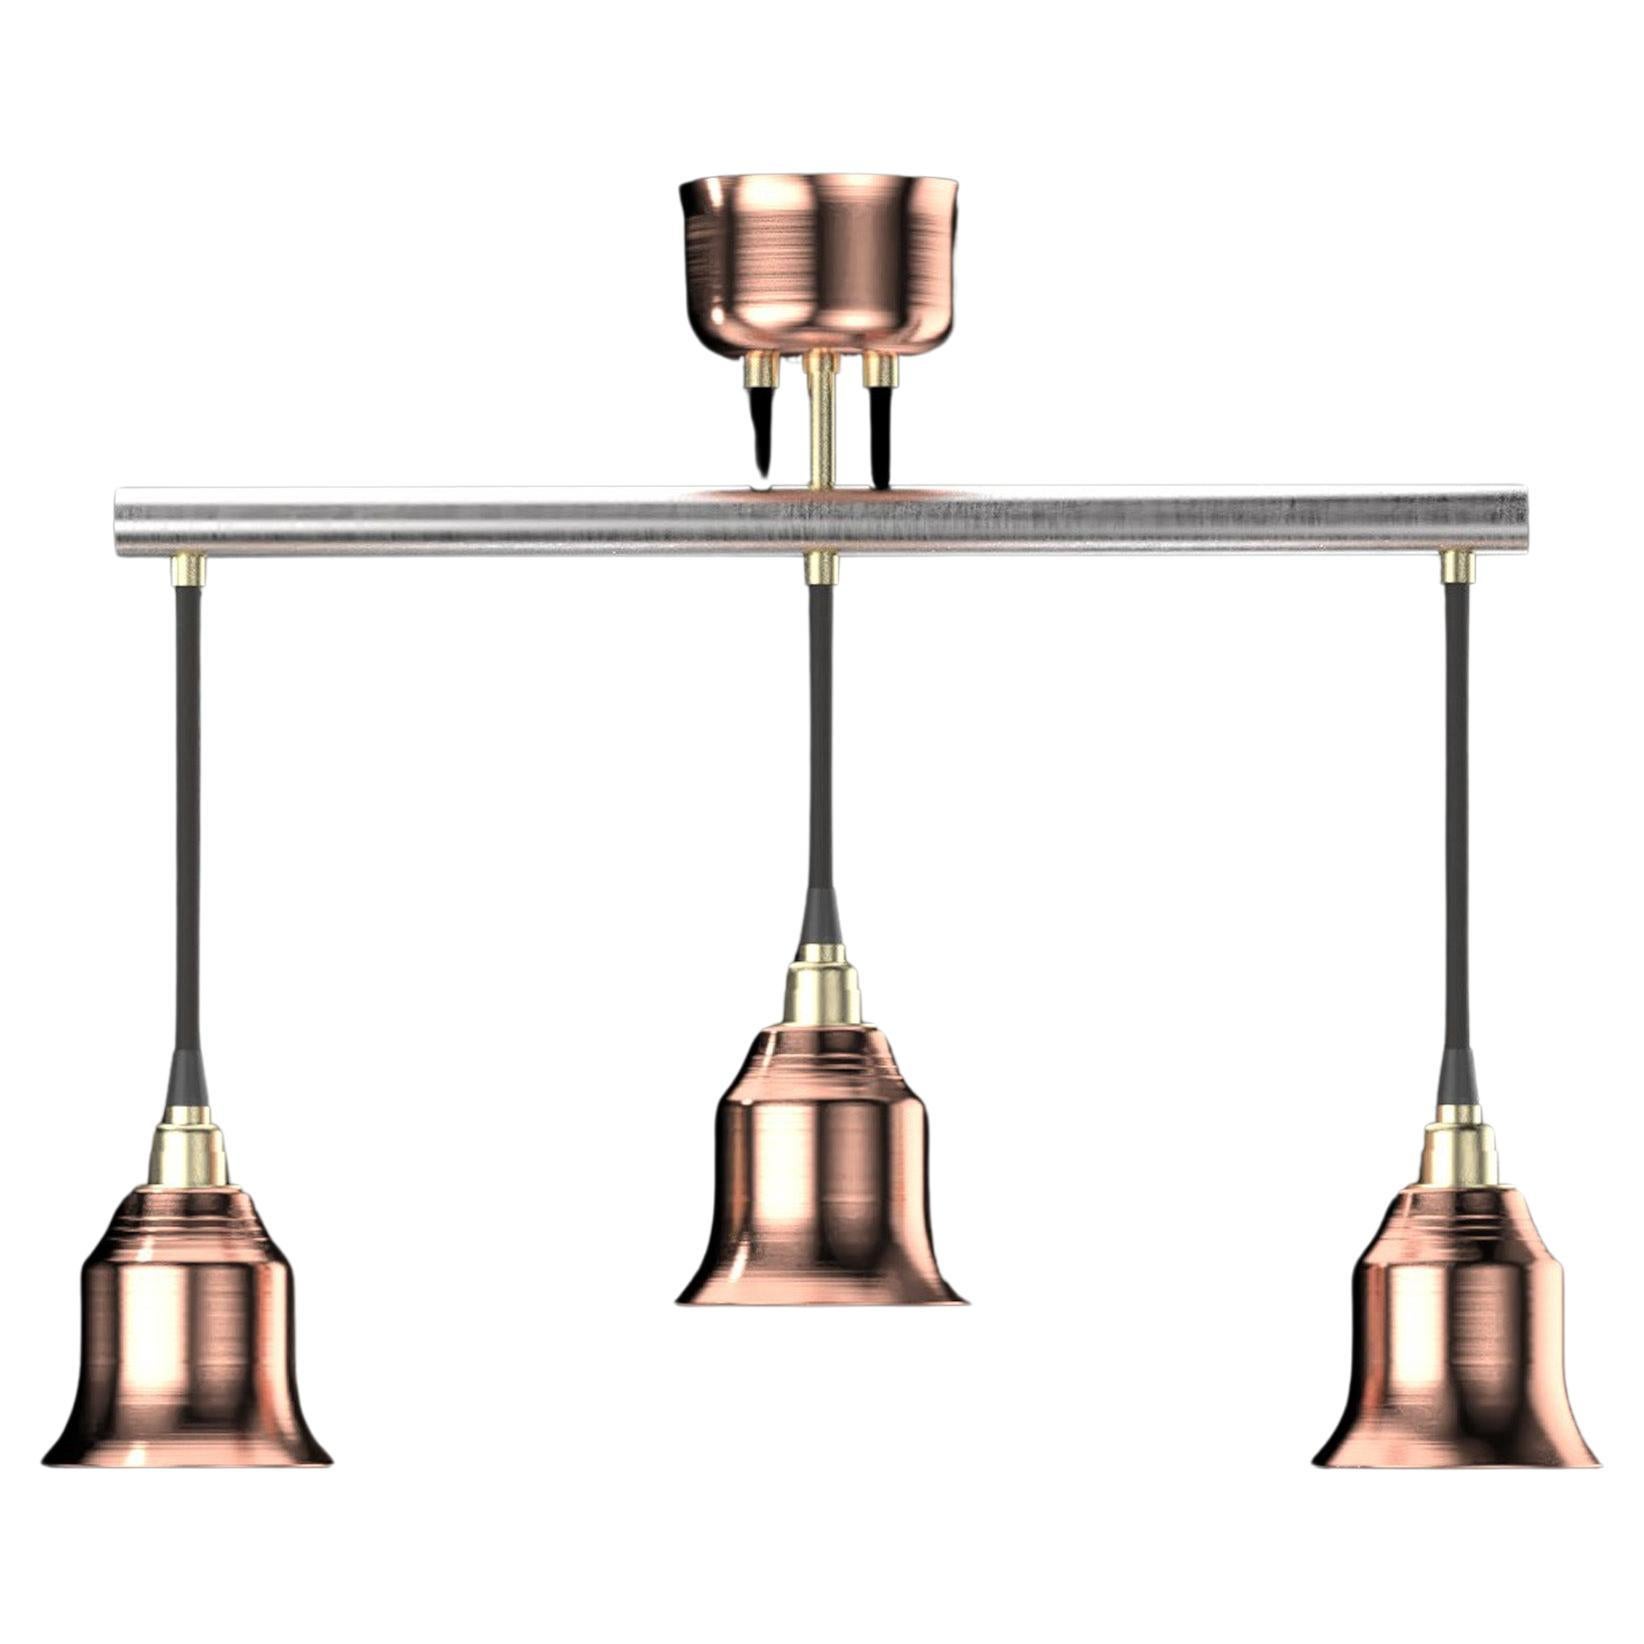 Edimate Stainless Steel / Copper Spot V1 Ceiling Light, Handmade in France